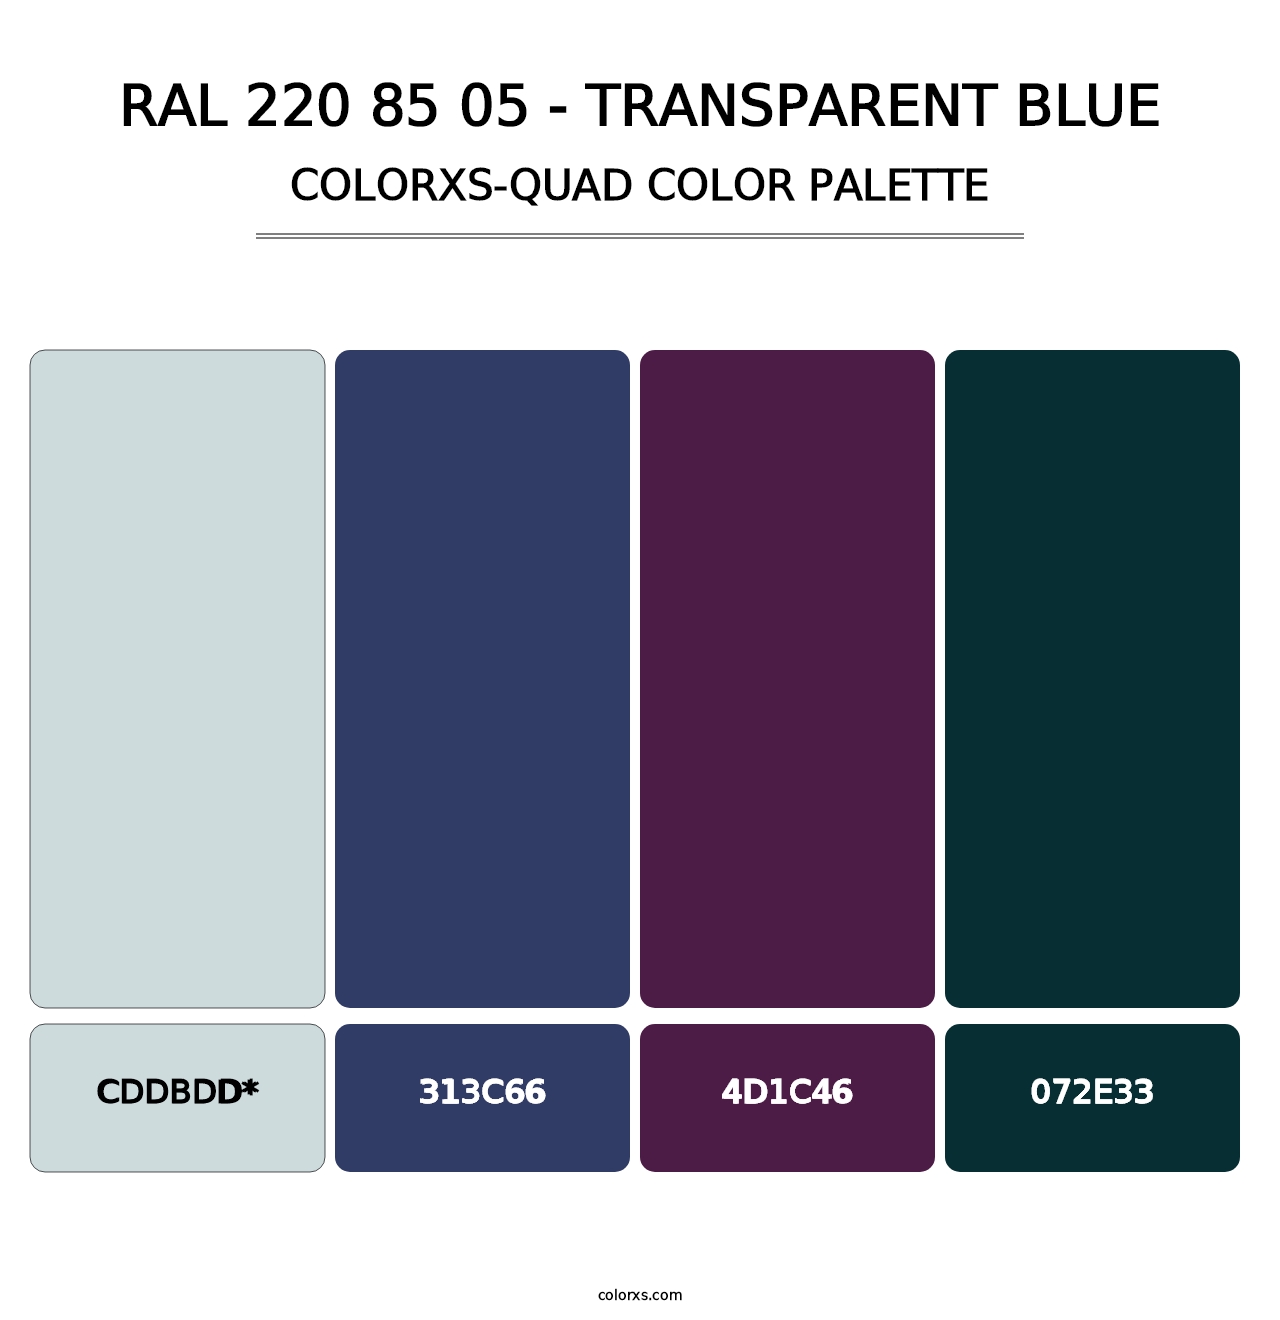 RAL 220 85 05 - Transparent Blue - Colorxs Quad Palette